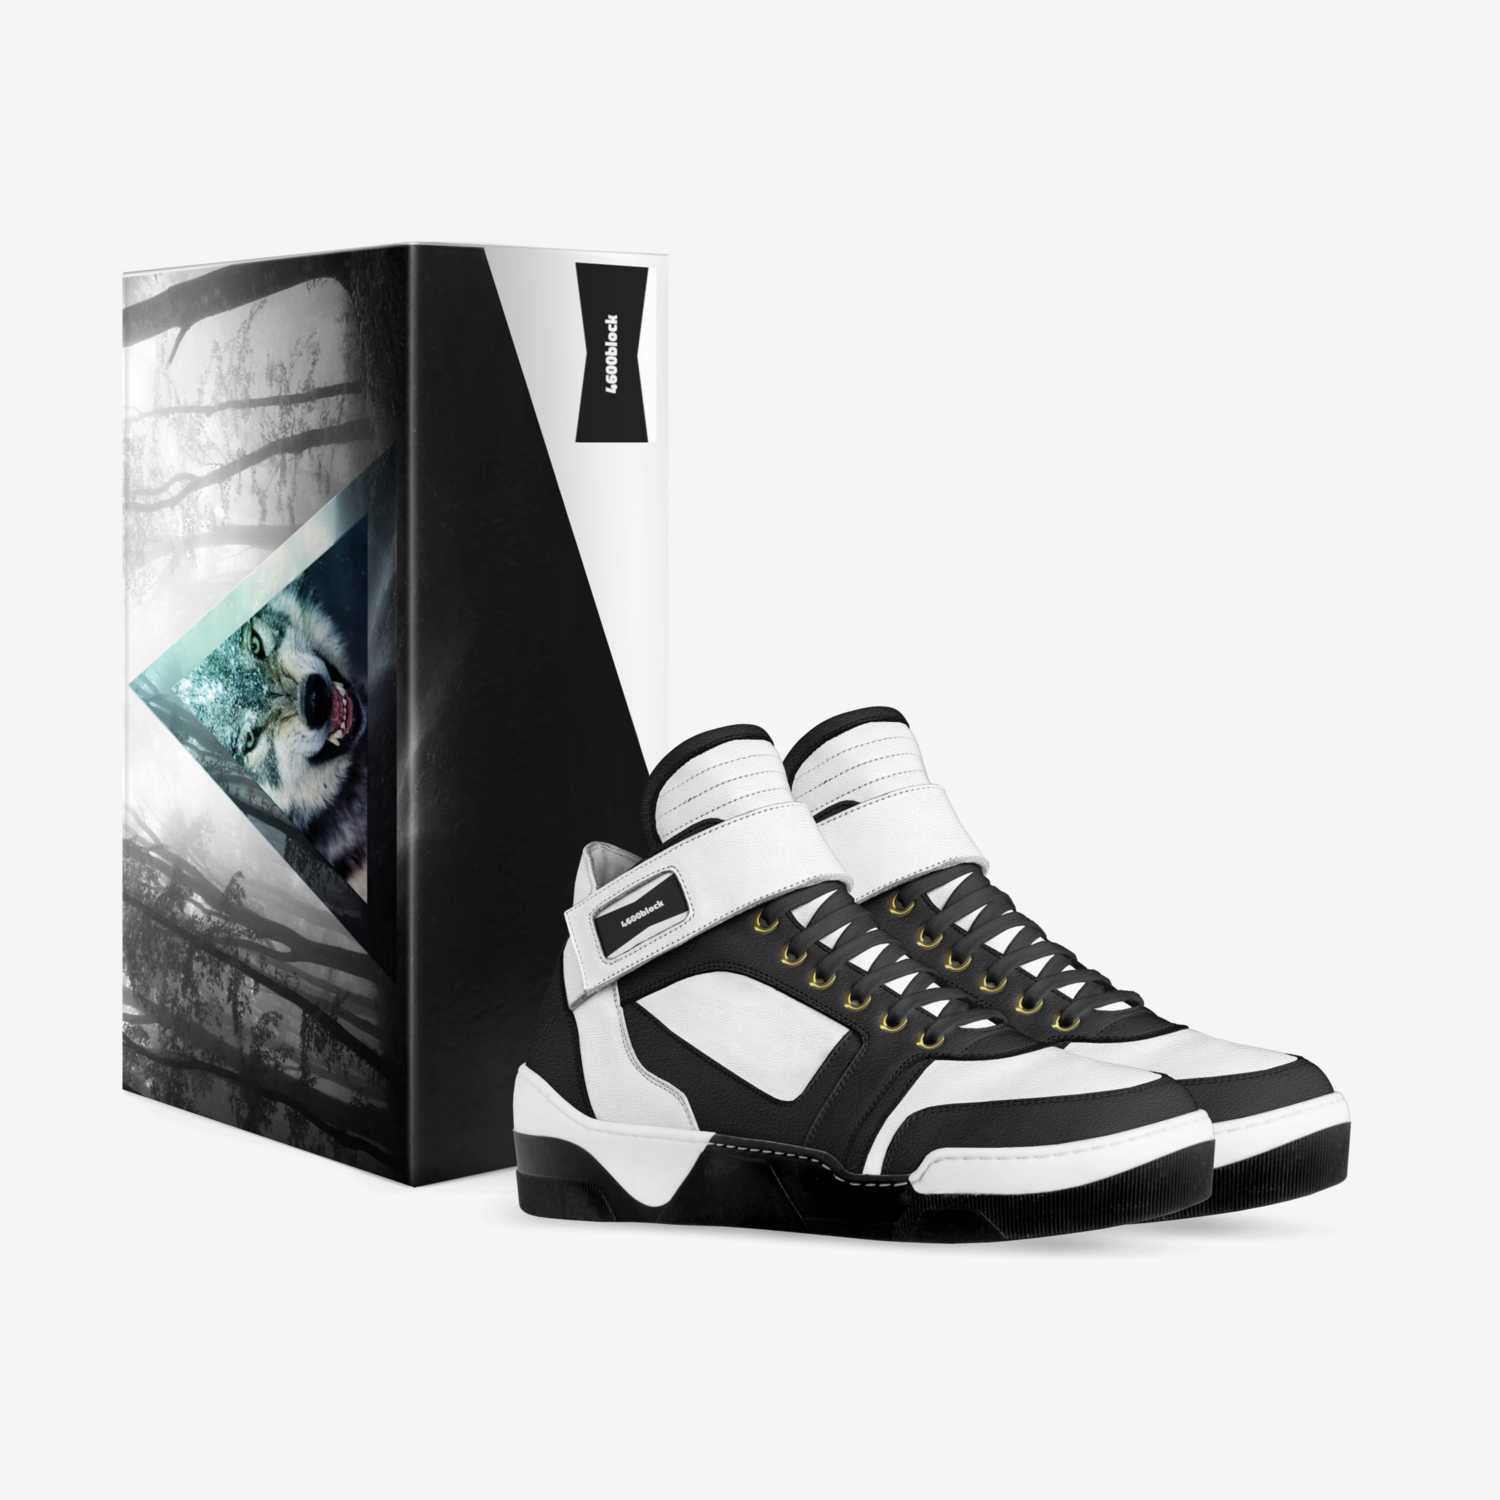 Eazy e's | A Custom Shoe concept by Nick Salazar